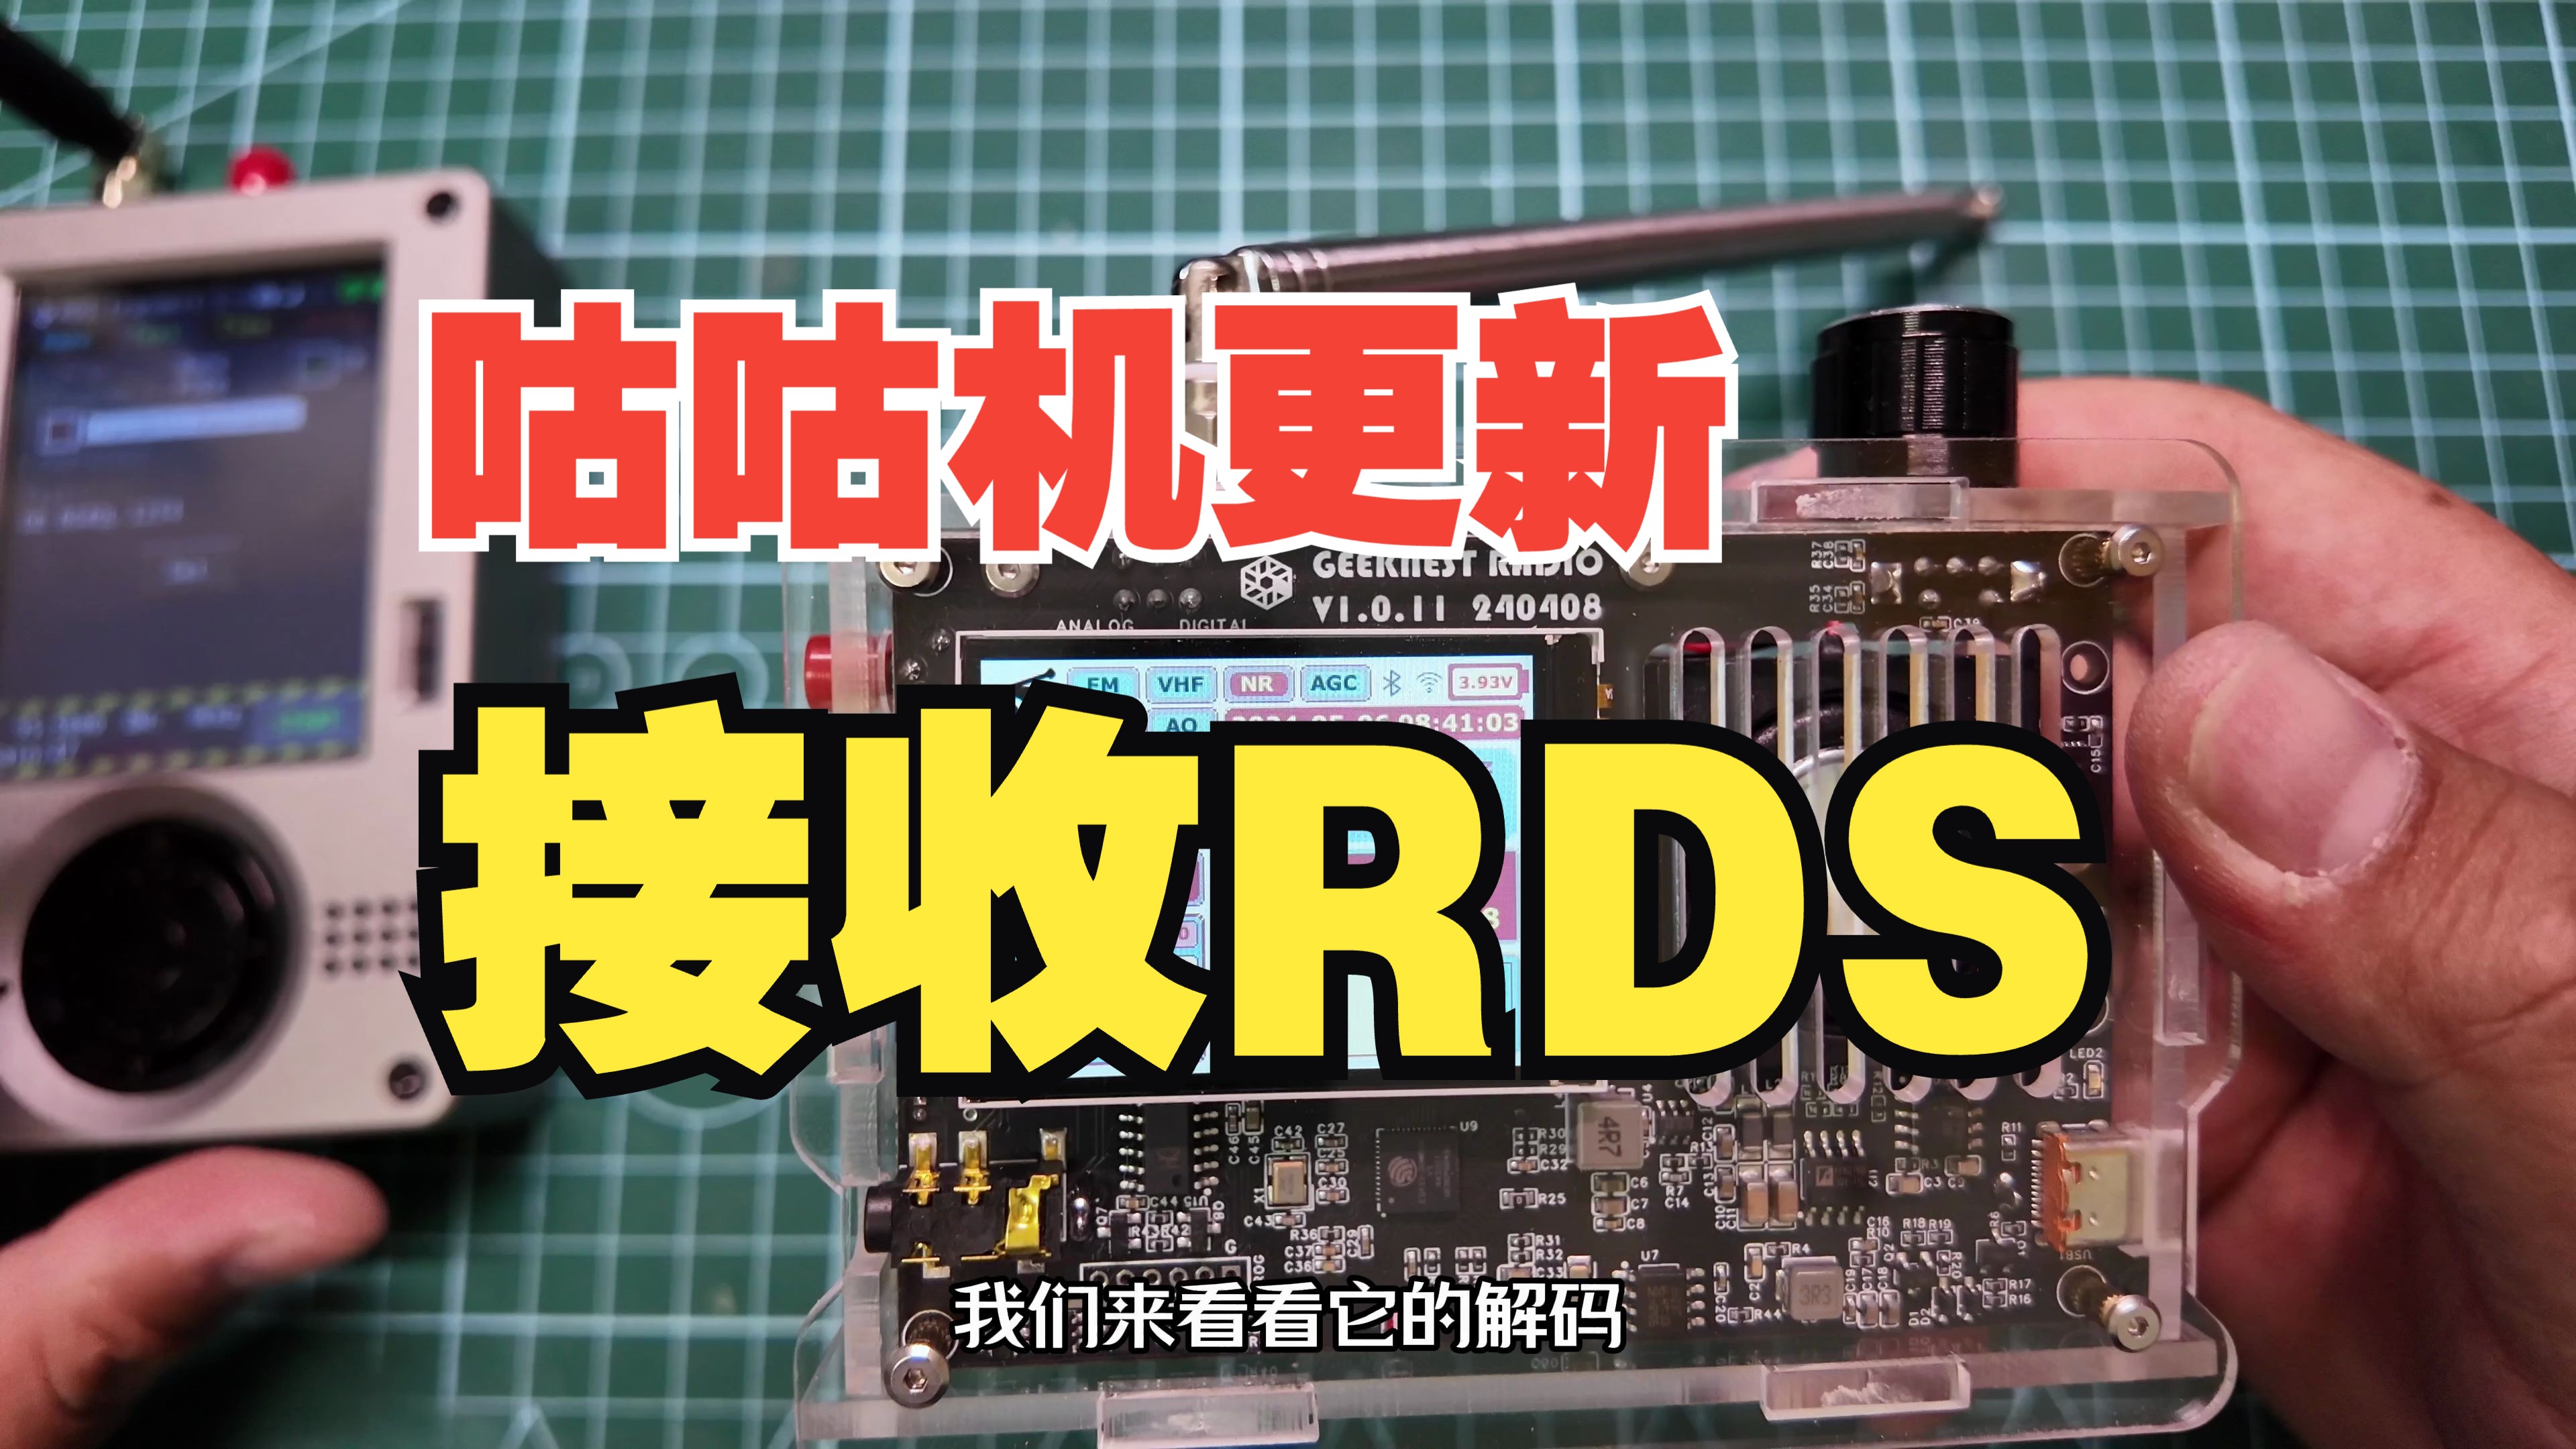 咕咕机全波段固件更新：RDS接收、亮度调节